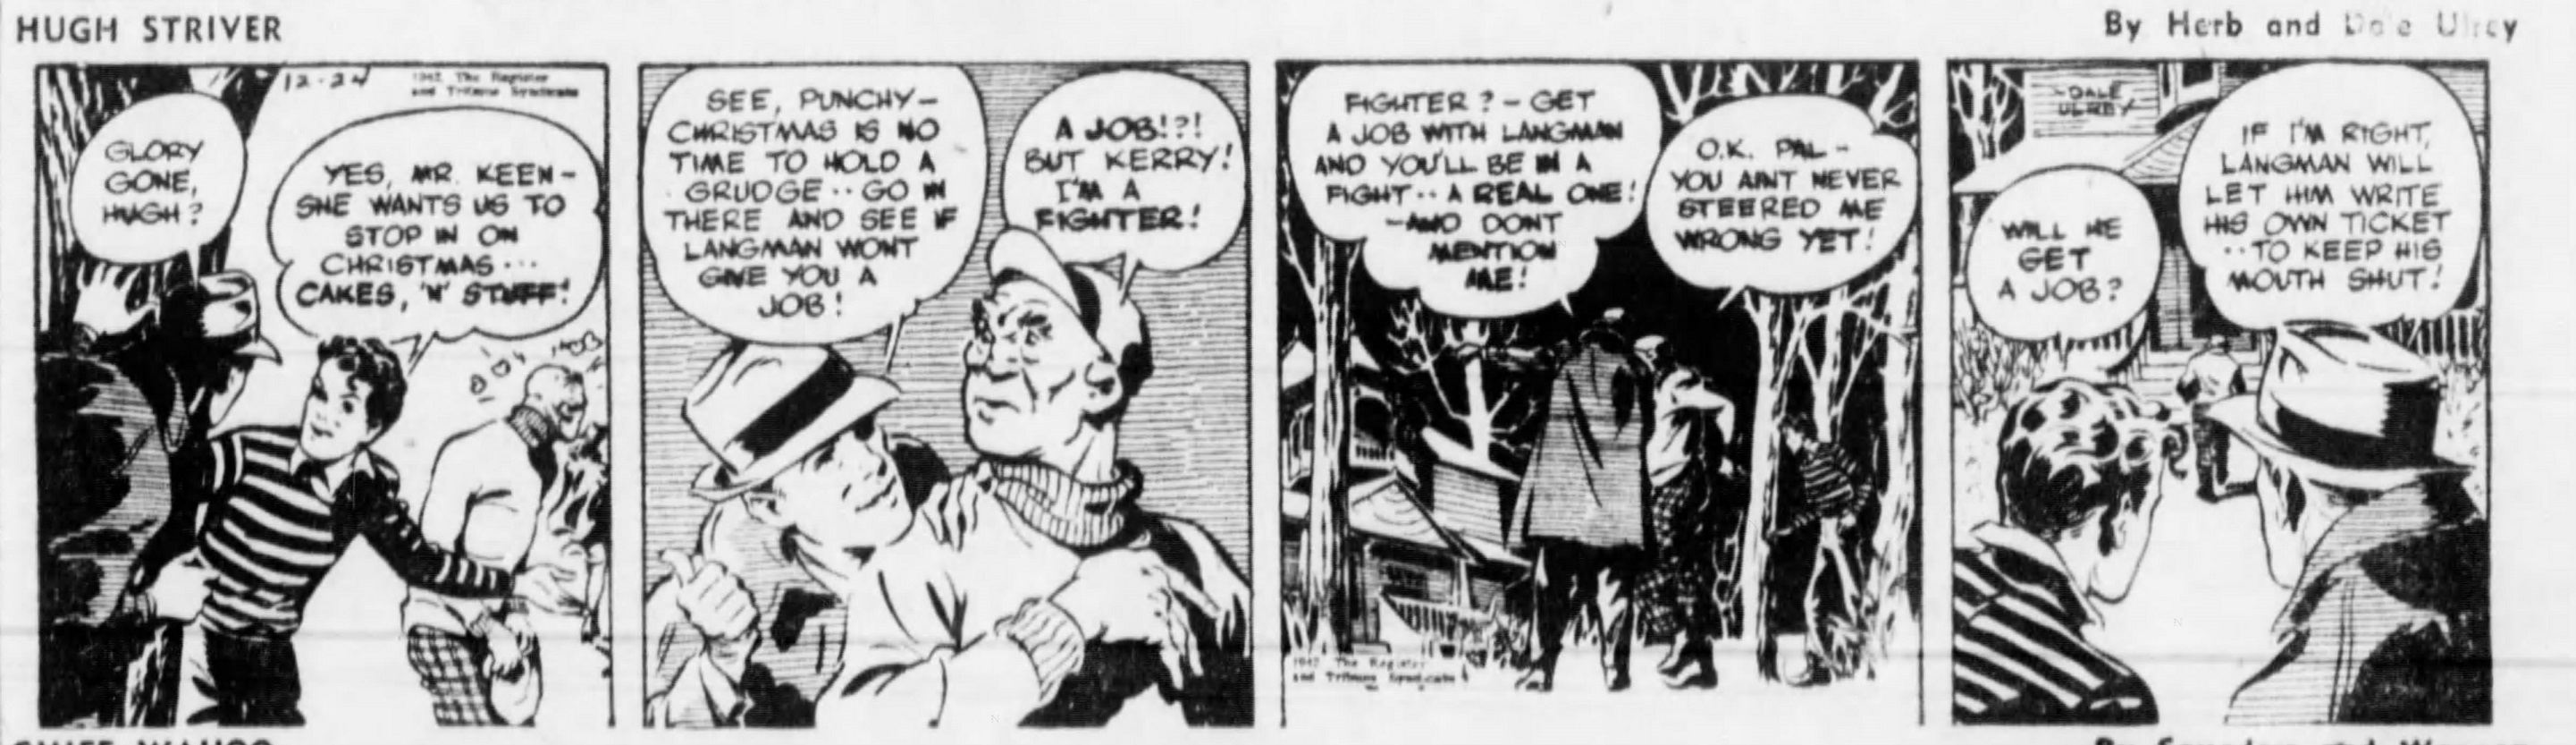 The_Brooklyn_Daily_Eagle_Wed__Dec_23__1942_(9).jpg